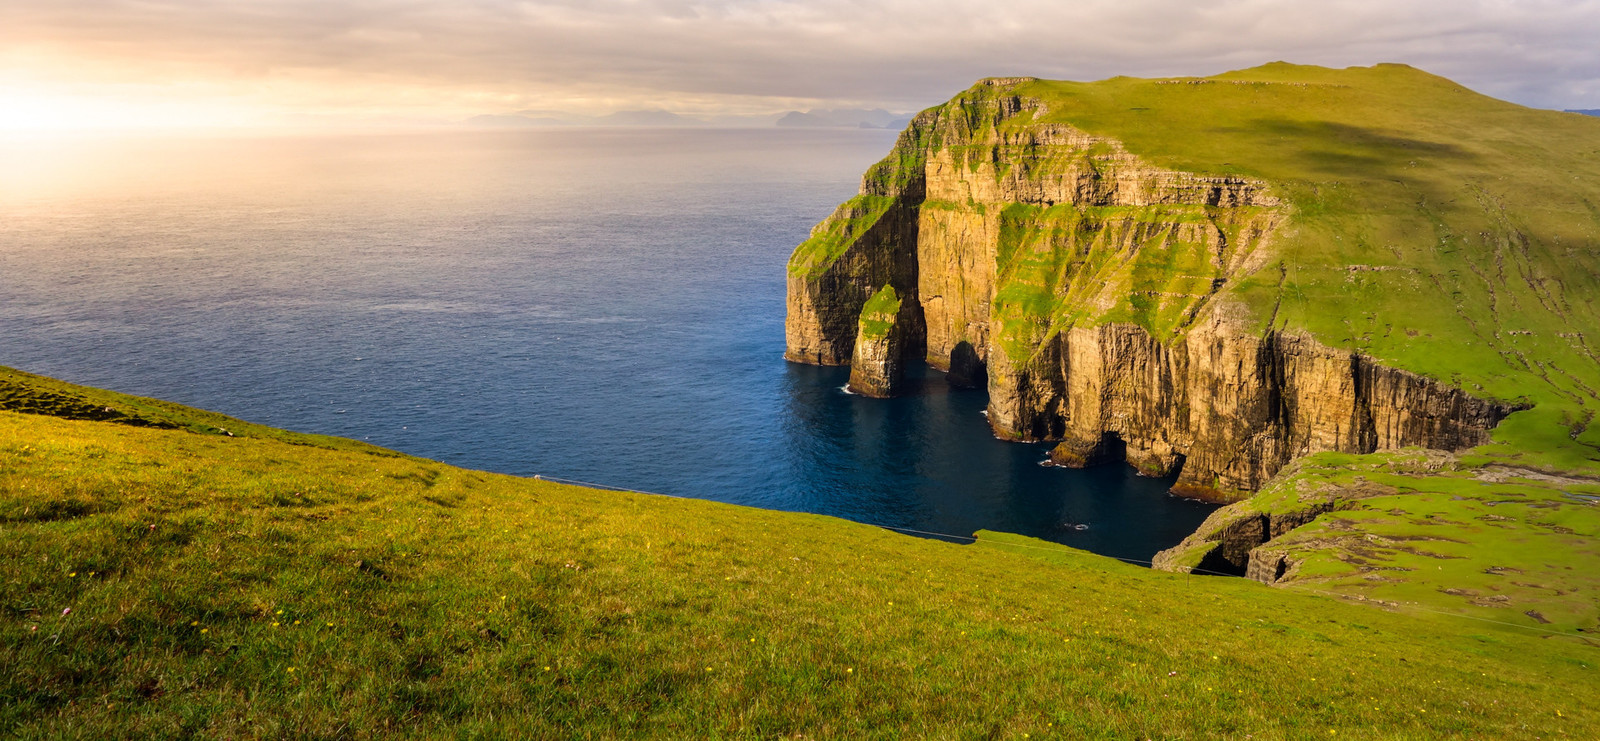 A photograph taken on the Faroe Islands